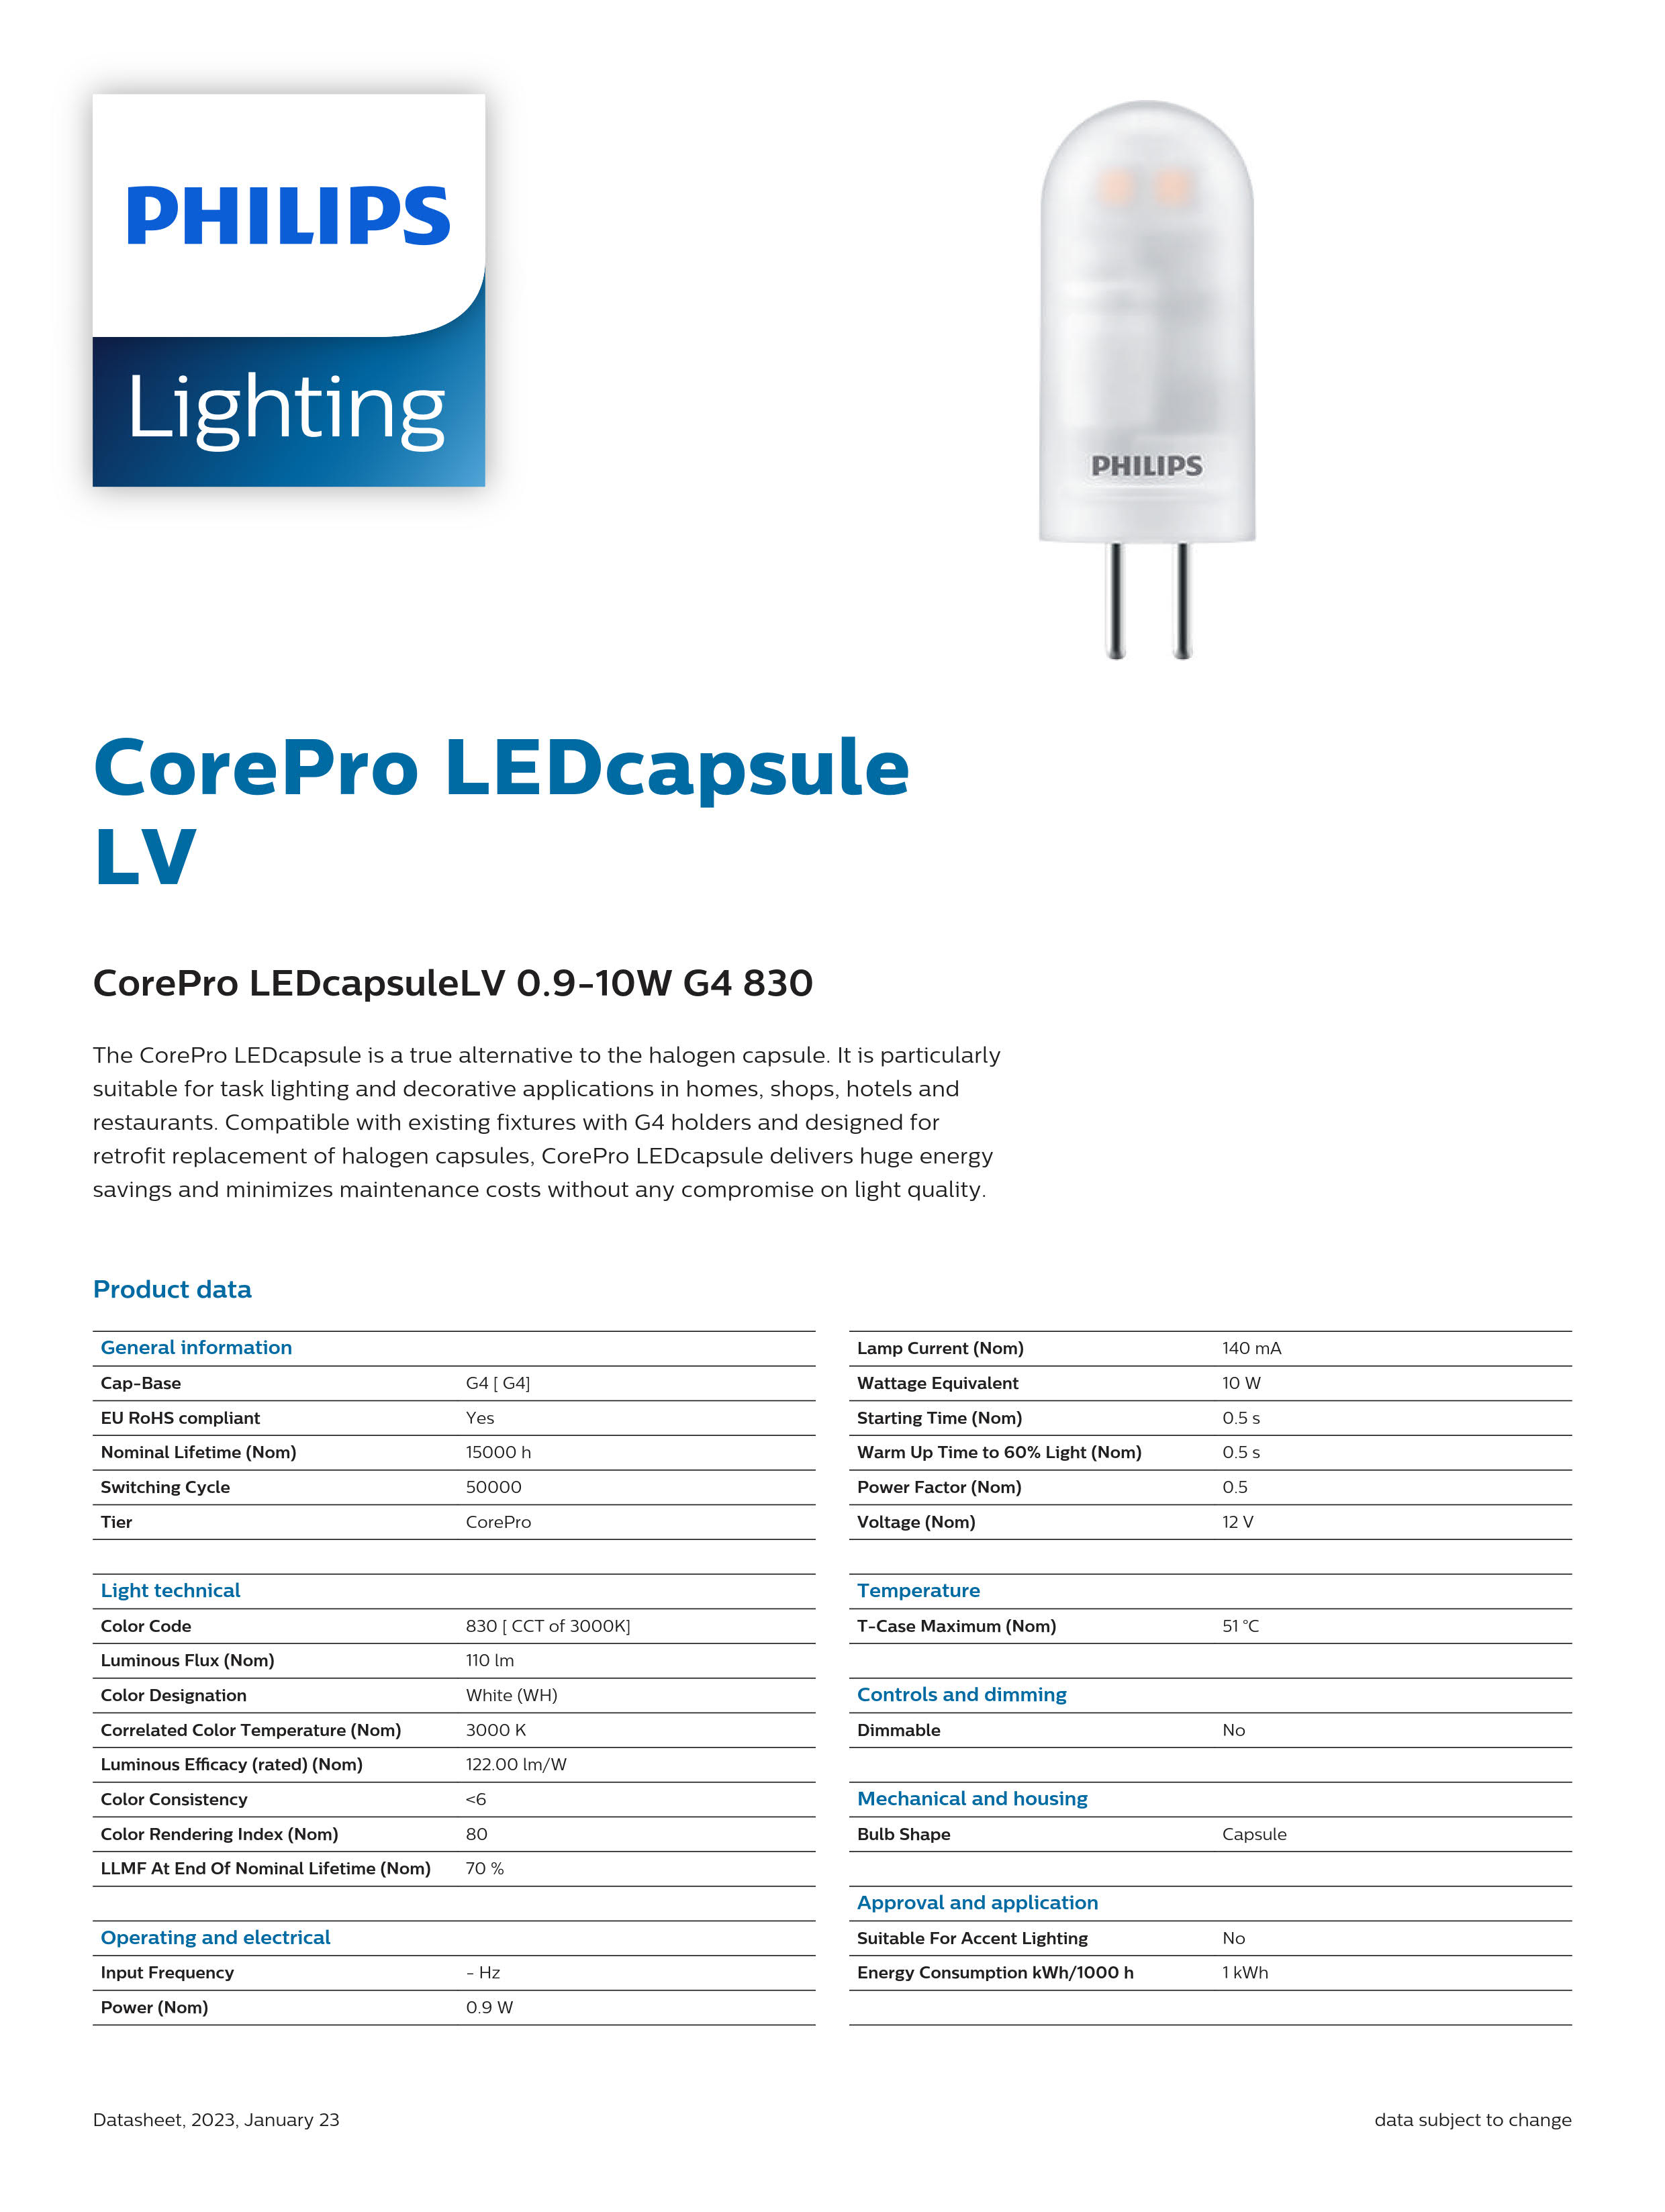 PHILIPS CorePro LED capsuleLV 0.9-10W G4 830 929001844002